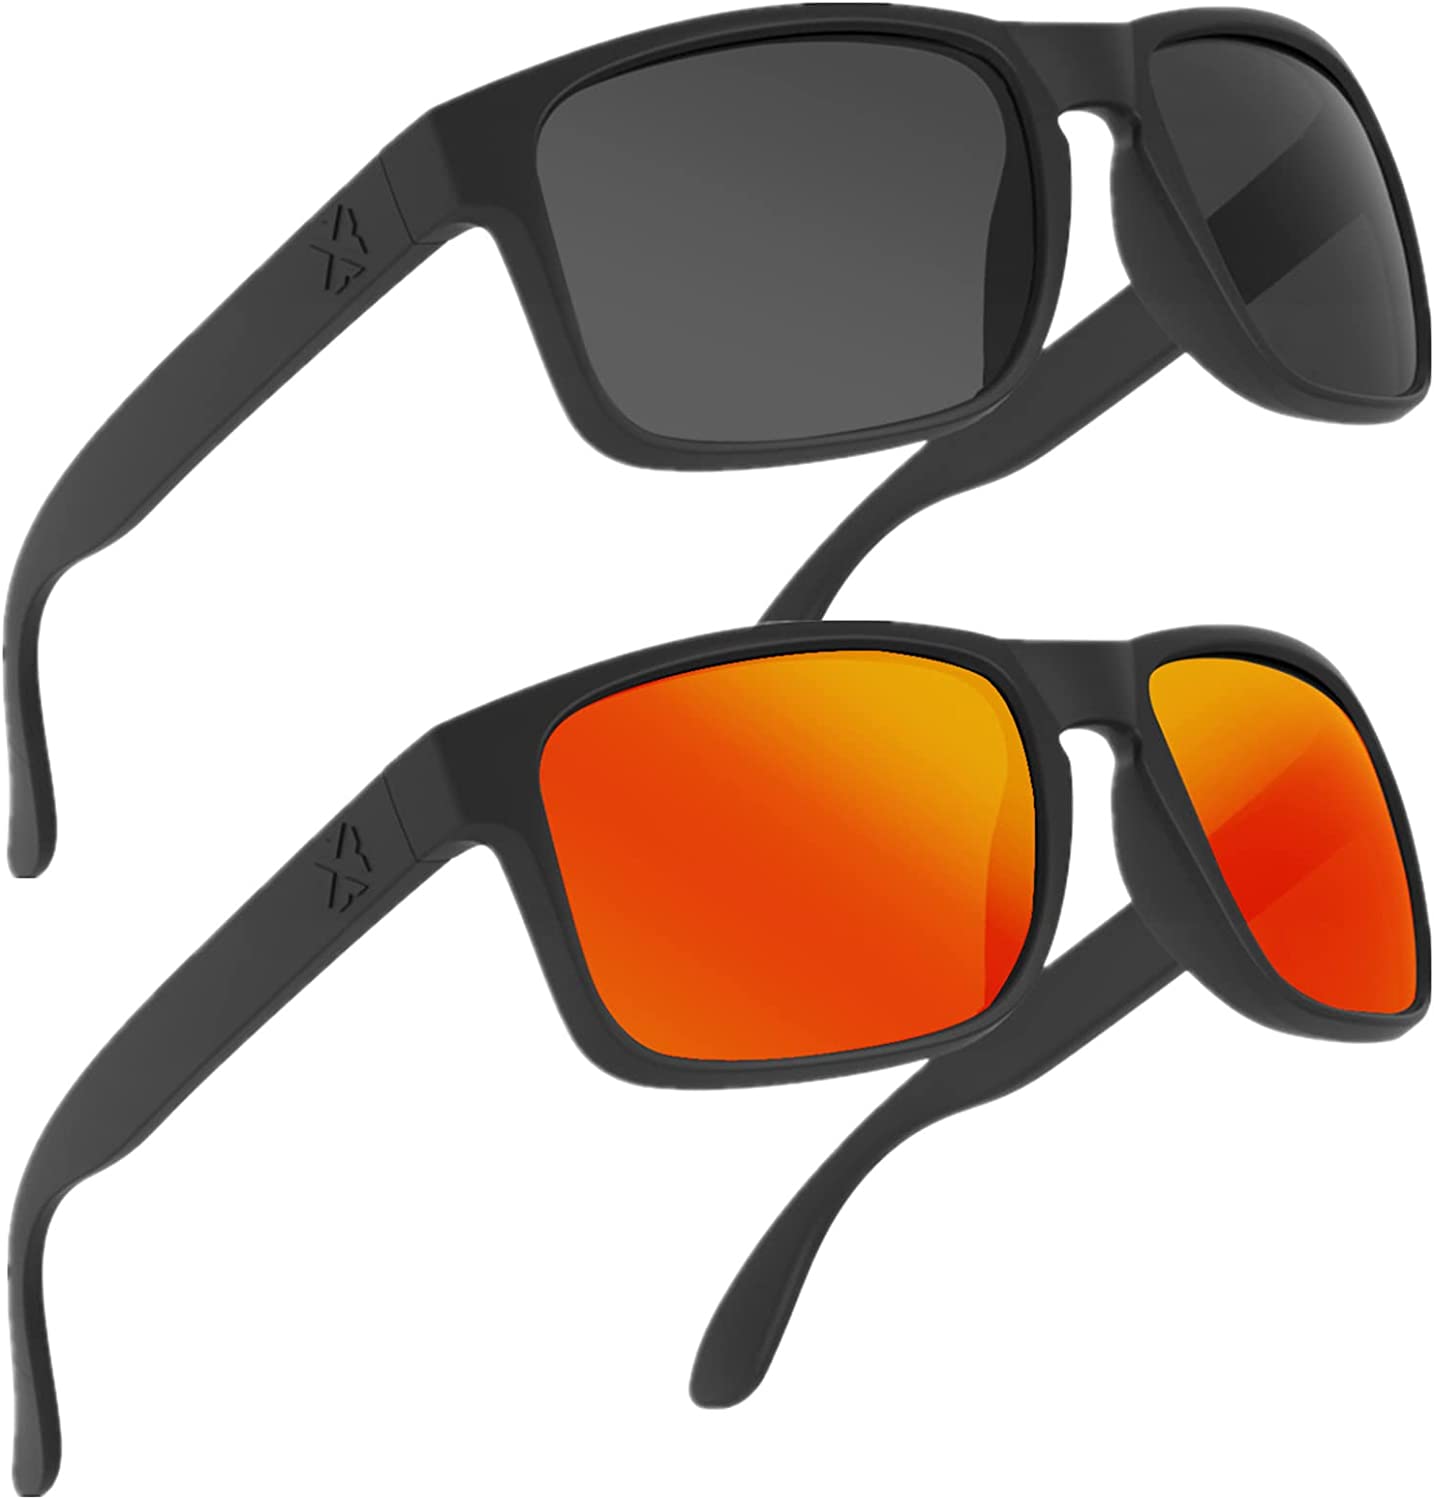 Maxjuli Polarized Sunglasses For Men And Women Uv400 Protection Sun Glasses Idea Ebay